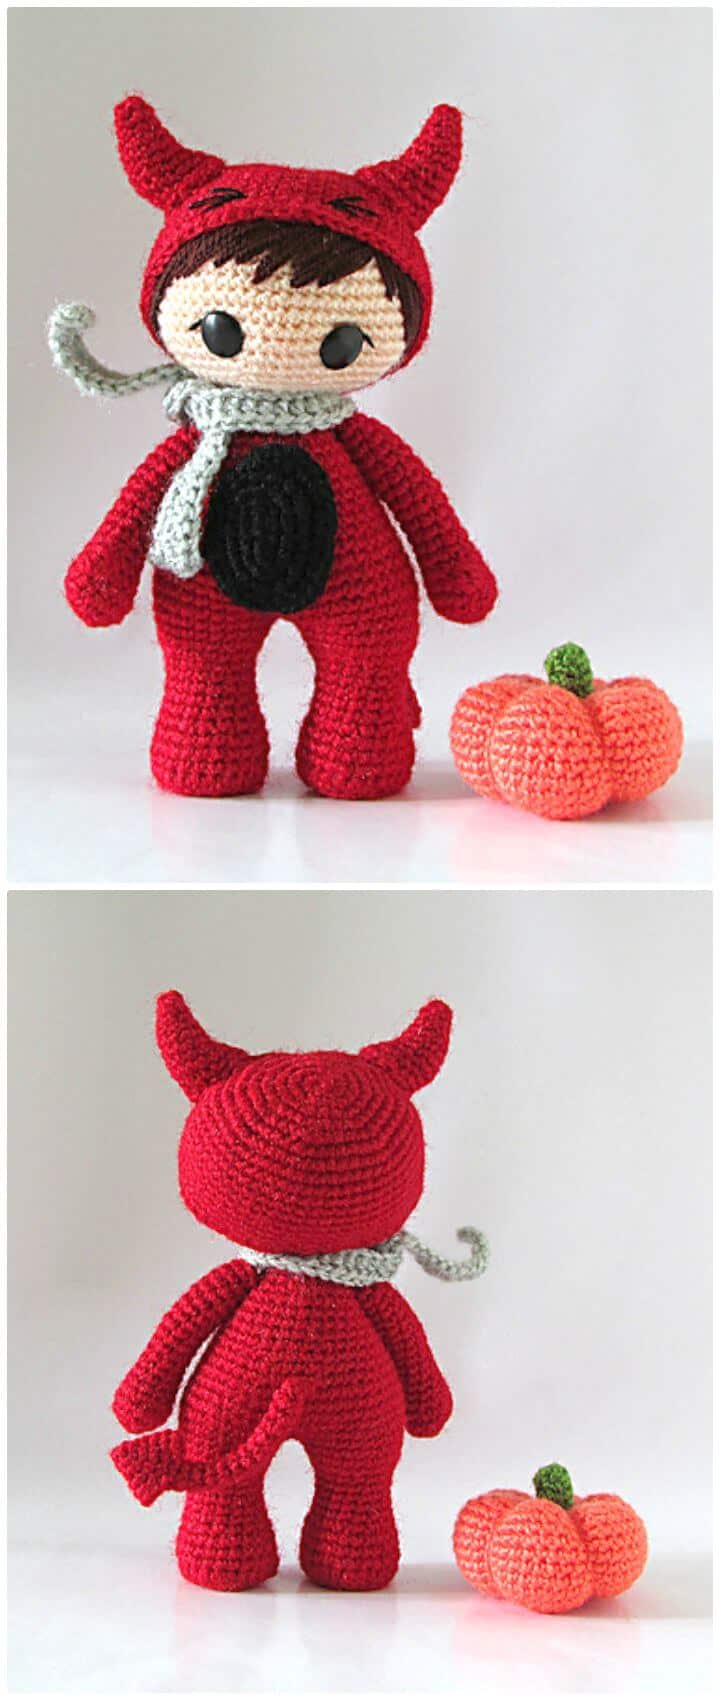 Patrón de amigurumi del pequeño diablo rojo a crochet gratis